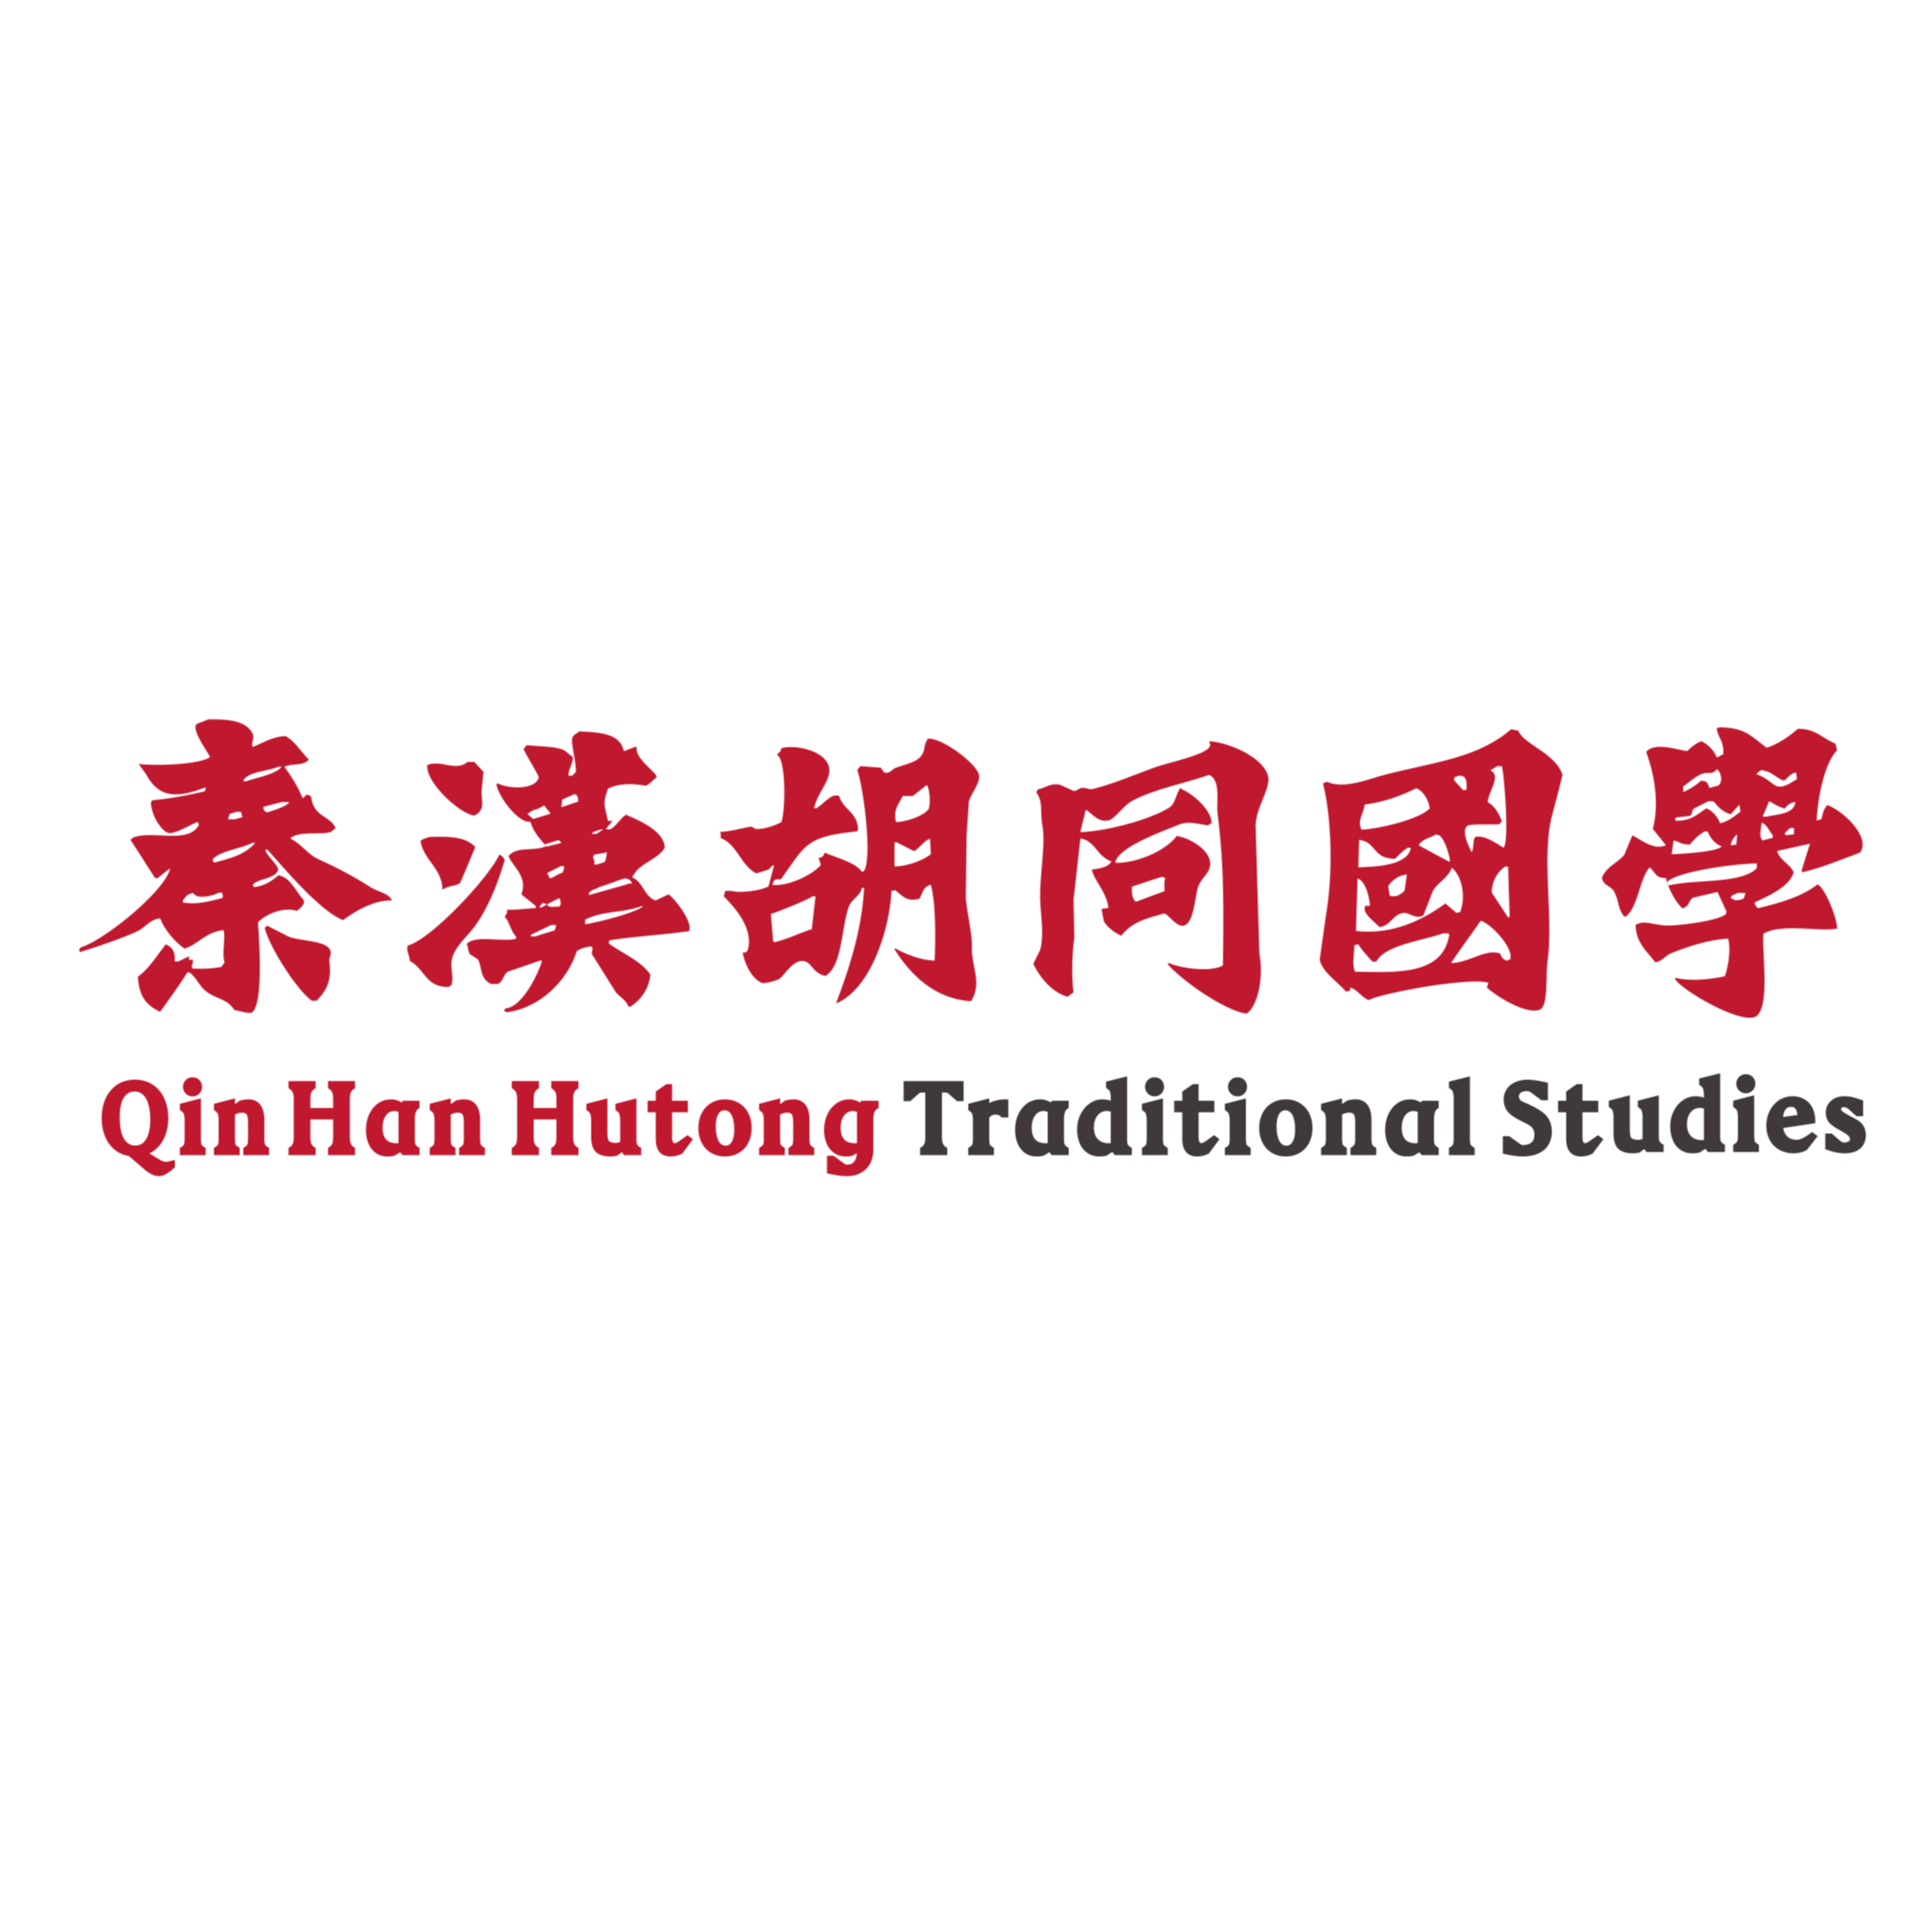 提供活动演出、传统文化体验课、礼品赞助/寻求广州场地资源、社区、学校、幼儿园